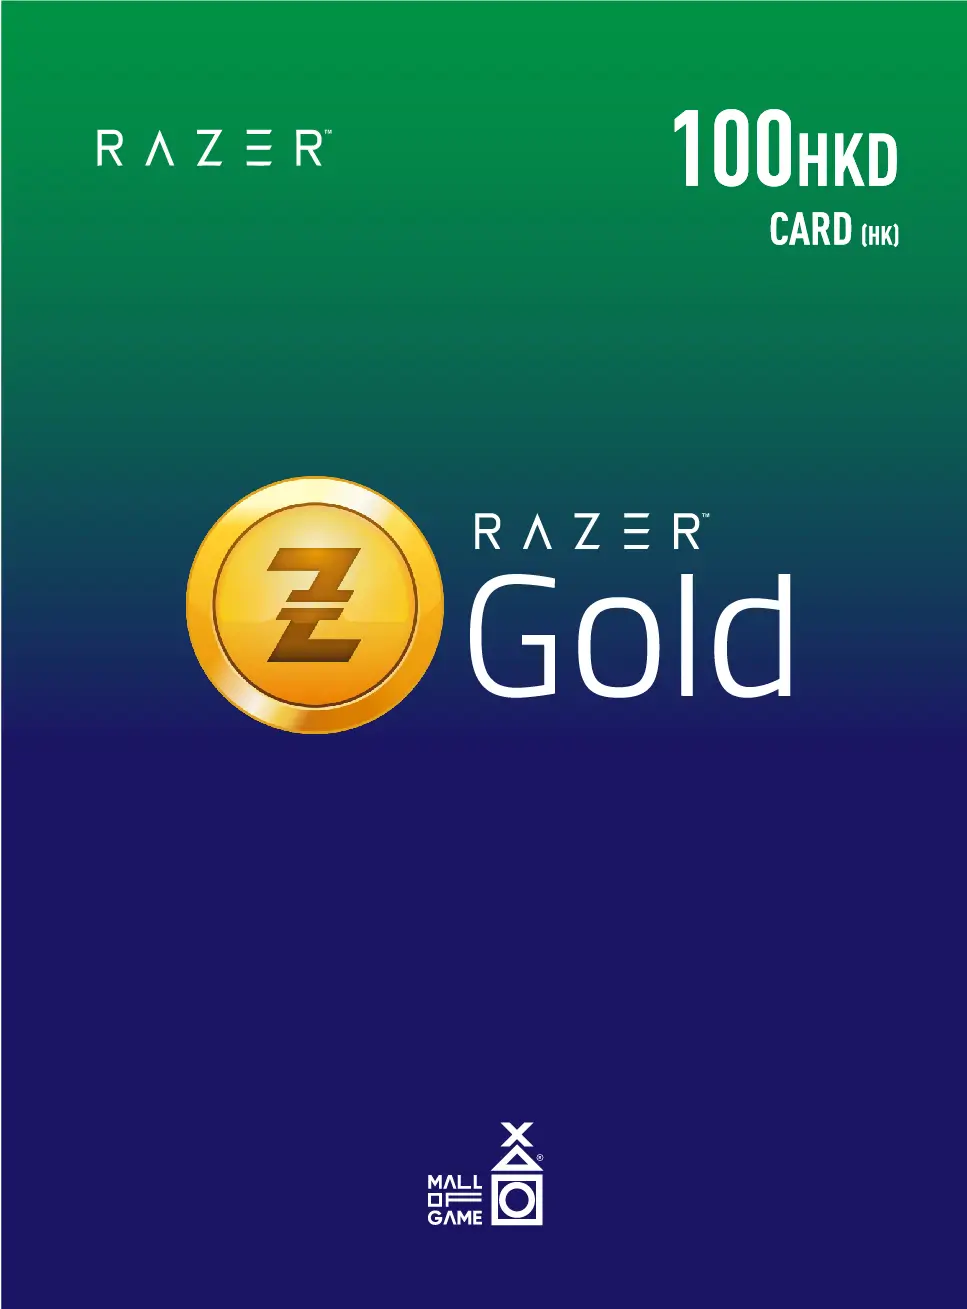 Razer Gold HKD100 (HK)